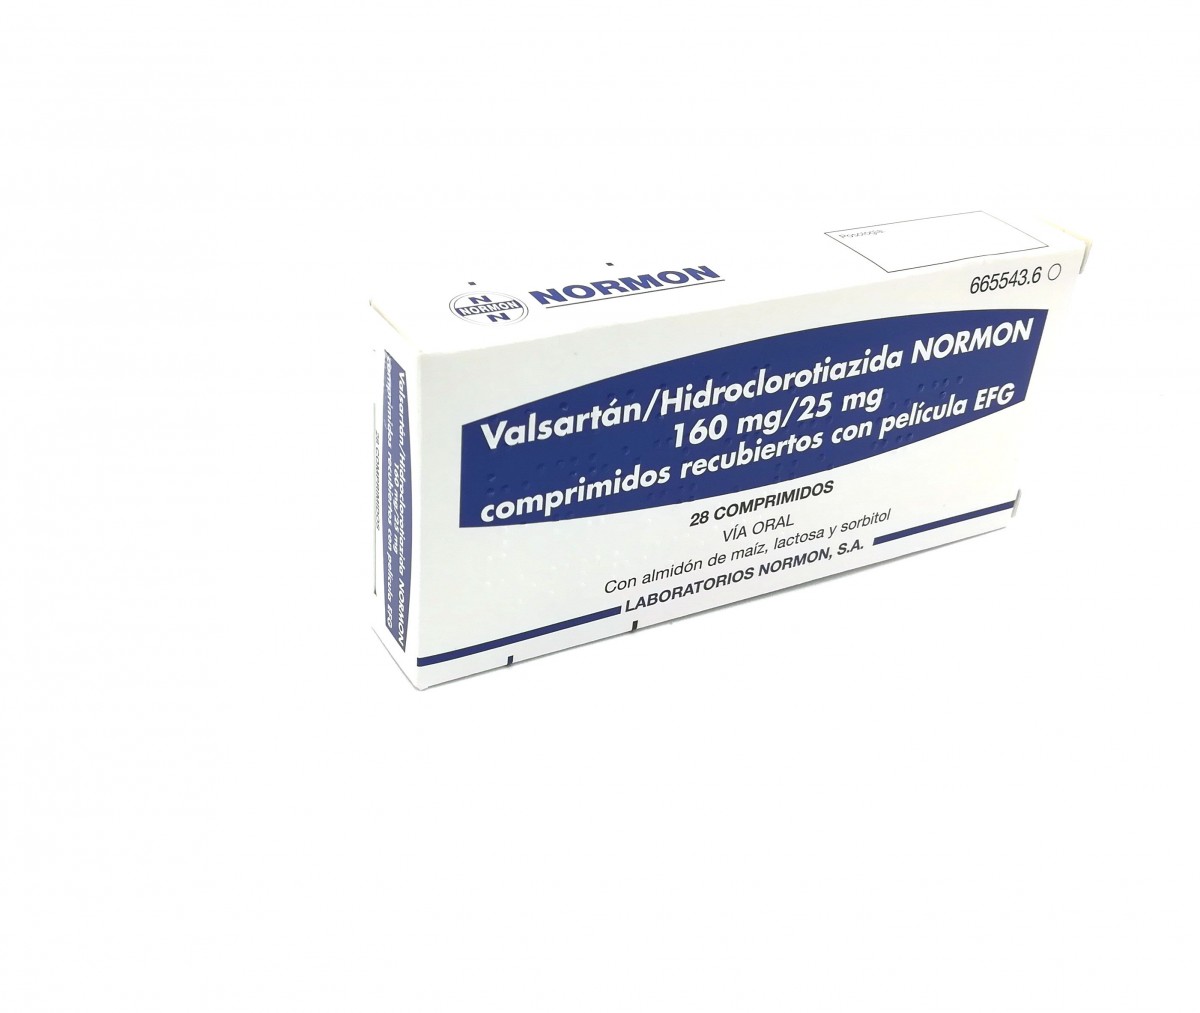 VALSARTAN/HIDROCLOROTIAZIDA NORMON 160 mg/25 mg COMPRIMIDOS RECUBIERTOS CON PELICULA EFG, 28 comprimidos fotografía del envase.